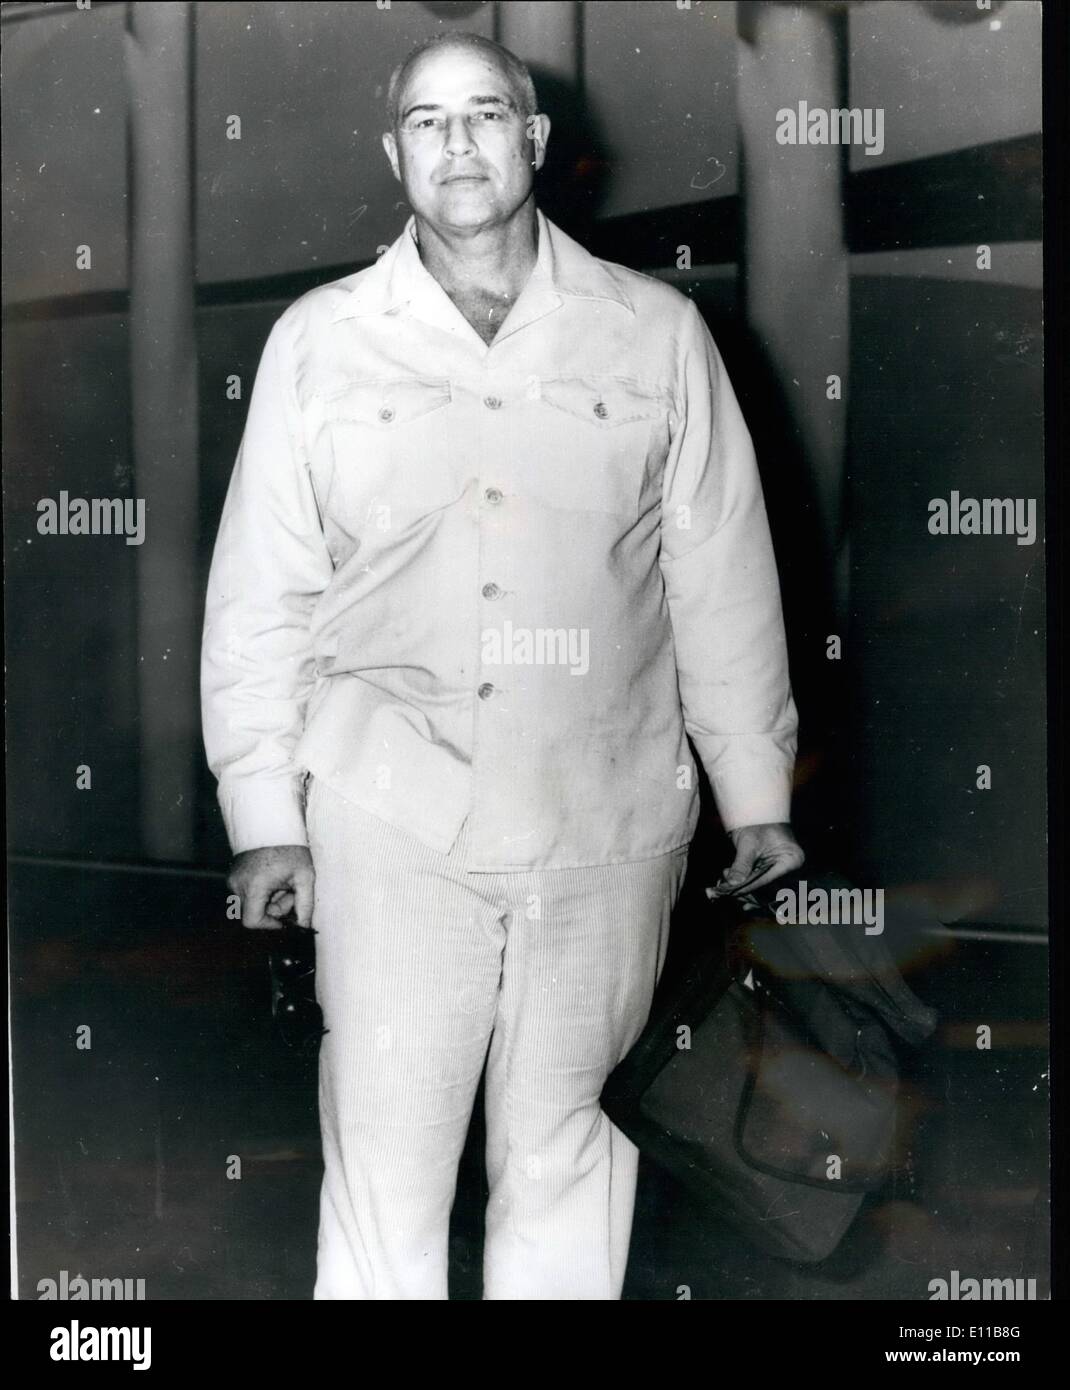 11 novembre 1976 - Marlon Brando arrive en Australie après le tournage à Manille : le célèbre film star, Marlon Brando, récemment arrivé à Sydney, en Australie, après avoir travaillé sur son dernier film, ''Apocalypse Now'' histoire de la guerre du Vietnam réalisé par Francis Ford Coppola. Marlon, qui est maintenant 52, ne seraient pas dire si il avait perdu de sa récente 18-poids en pierre tout en travaillant dans l'Extrême-Orient. Photo montre Marlon Brando vu à son arrivée à Sydney sur le chemin de sa maison à Tetizoa, son propre projet de loi d'atoll du Pacifique Sud. Banque D'Images